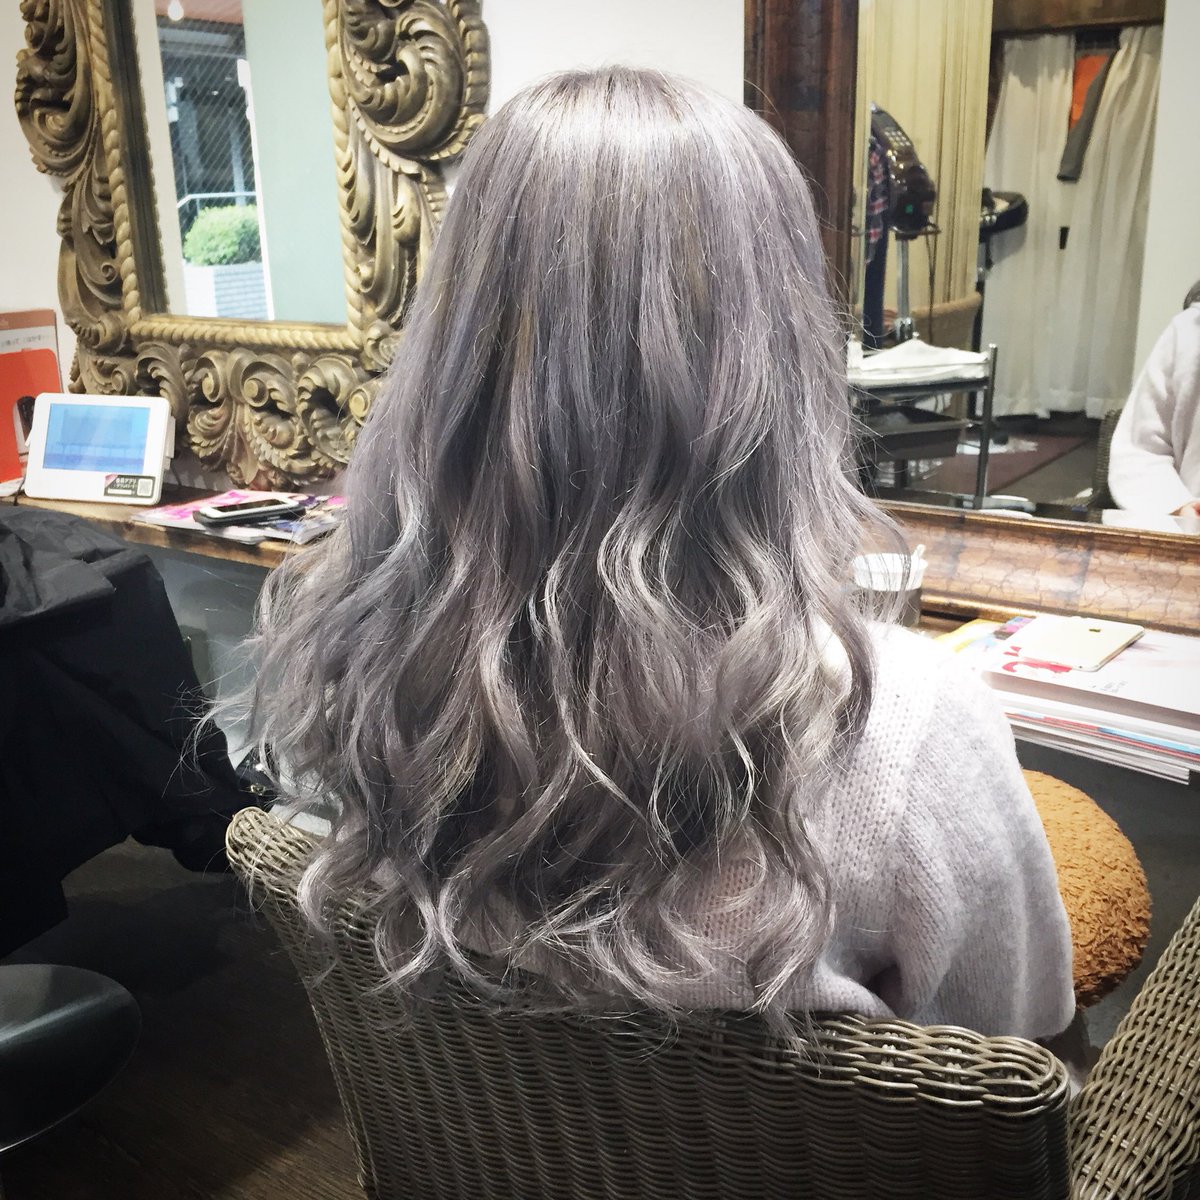 髪の毛 カラー シルバー - 新しい髪型